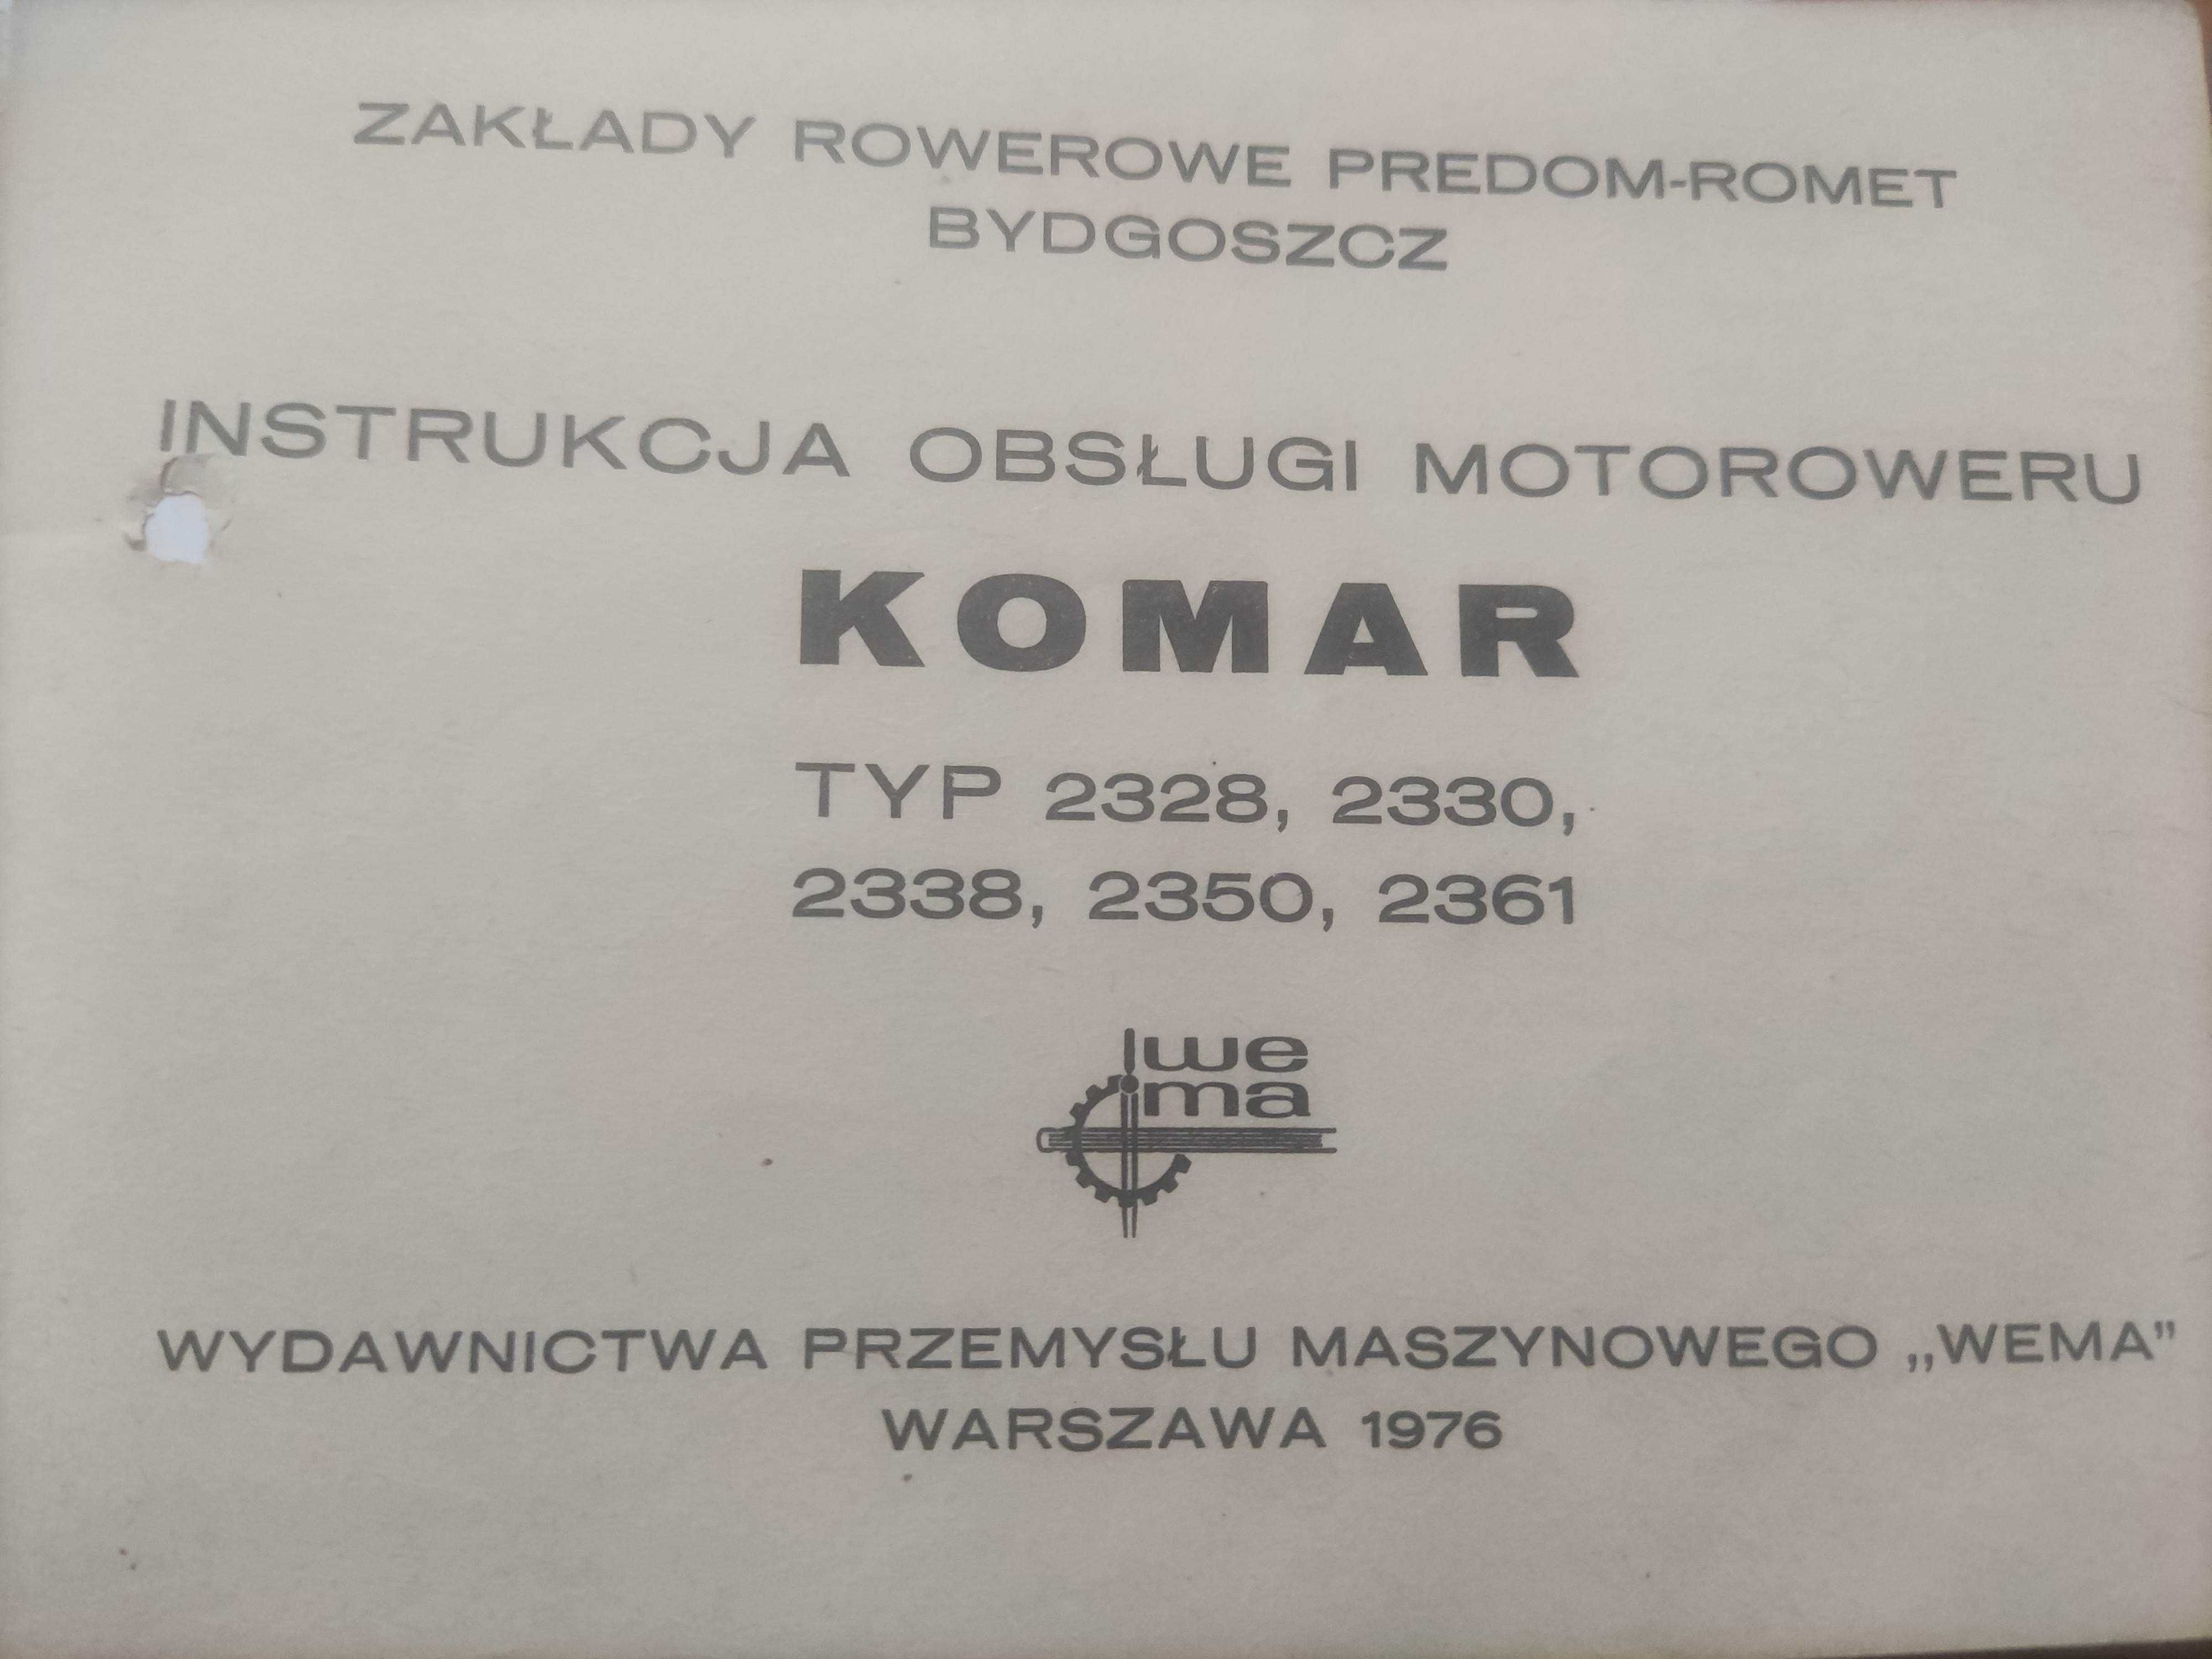 Instrukcja obsługi motoroweru Komar Typ 2328, 2338, 2330, 2350, 2361.